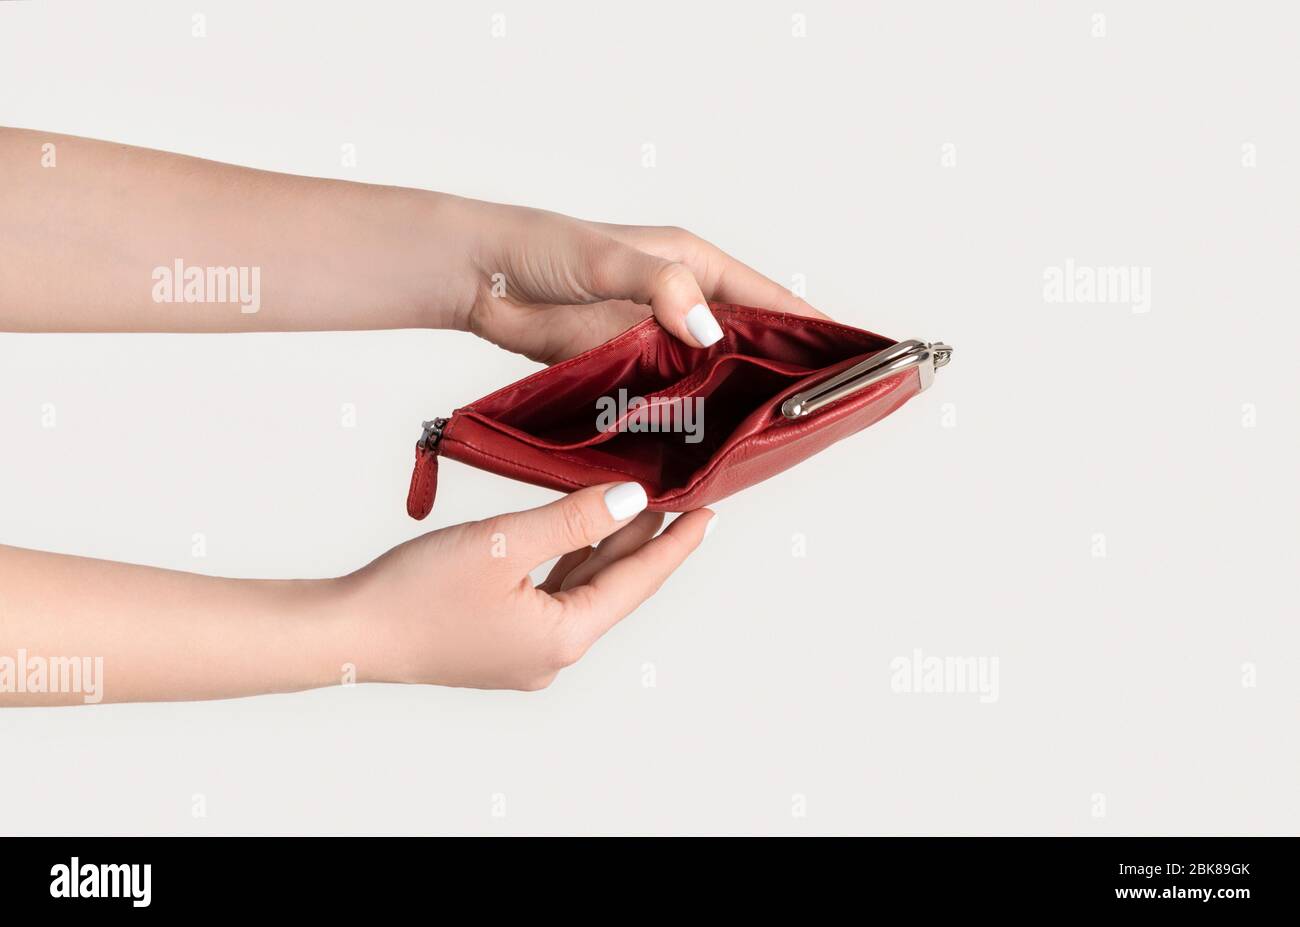 Wallet Empty Banque d'image et photos - Alamy